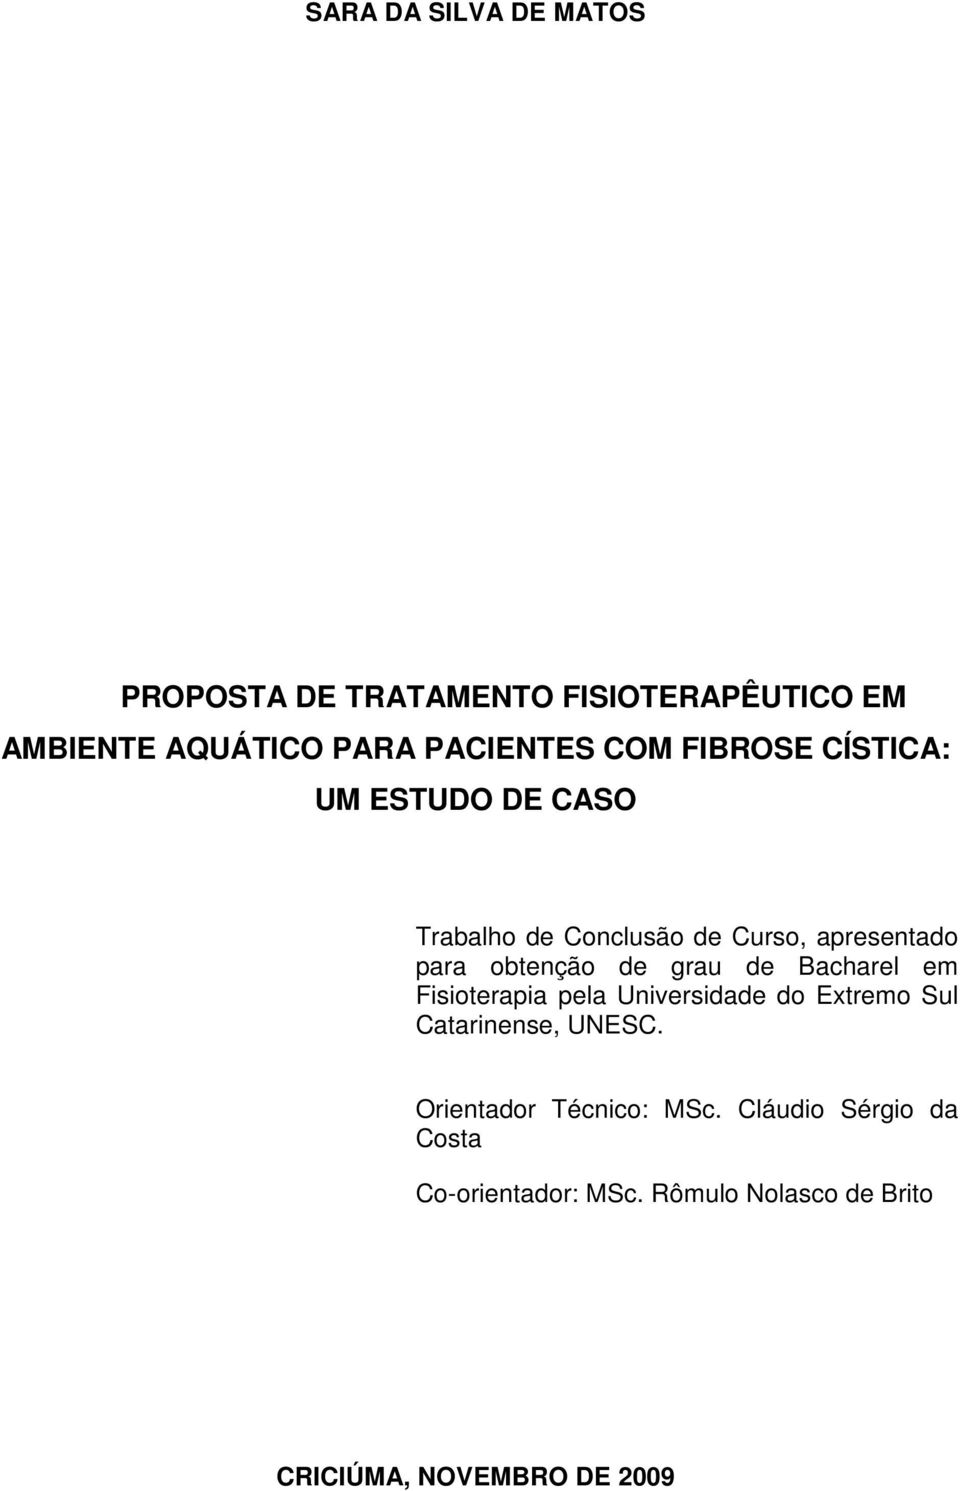 grau de Bacharel em Fisioterapia pela Universidade do Extremo Sul Catarinense, UNESC.